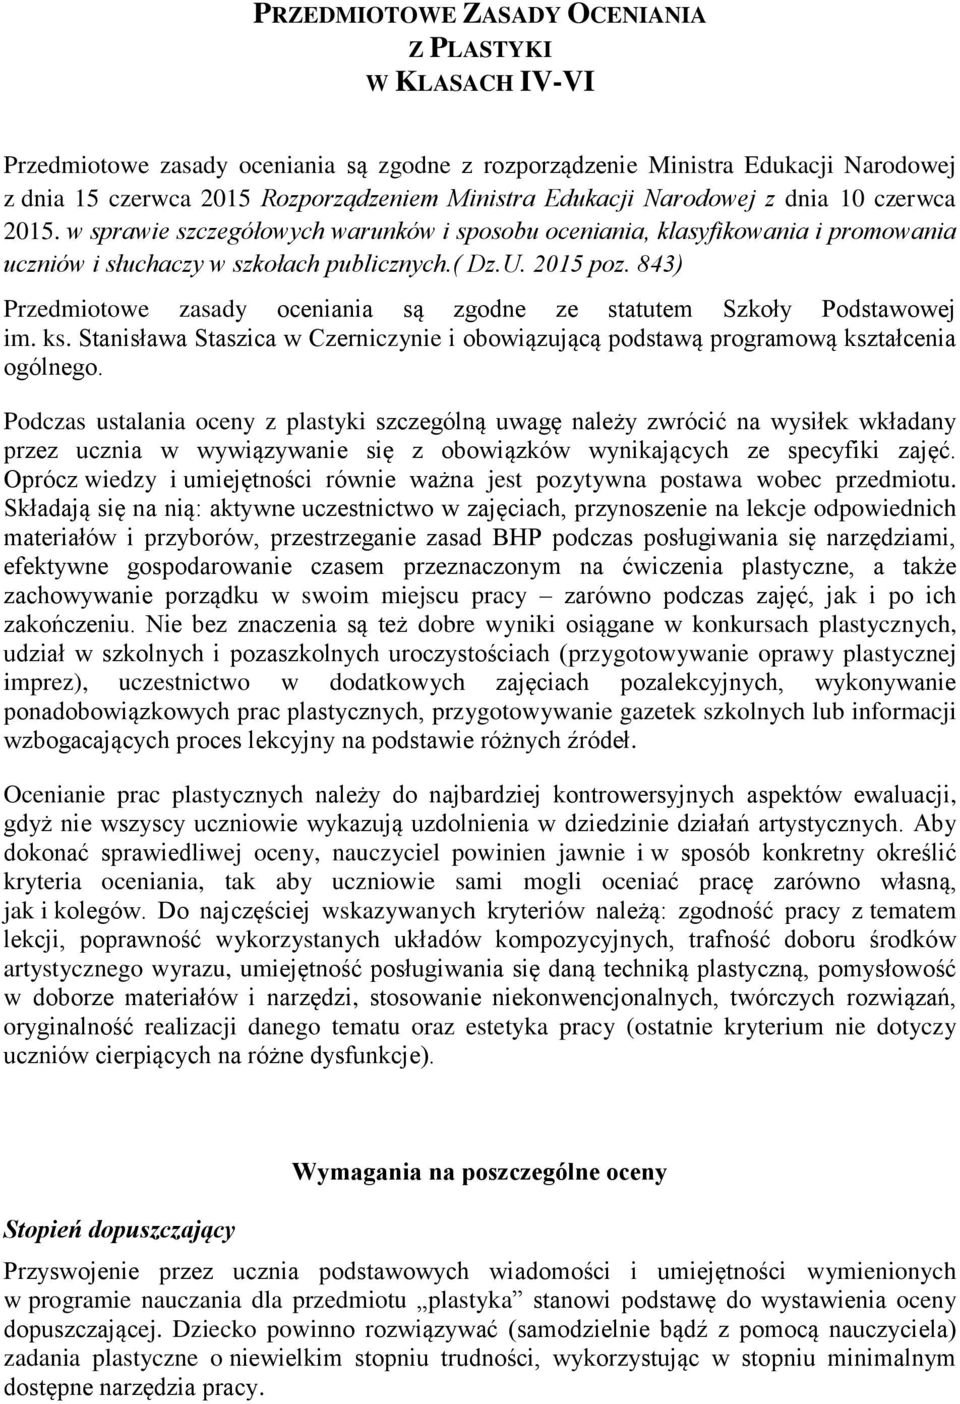 843) Przedmiotowe zasady oceniania są zgodne ze statutem Szkoły Podstawowej im. ks. Stanisława Staszica w Czerniczynie i obowiązującą podstawą programową kształcenia ogólnego.